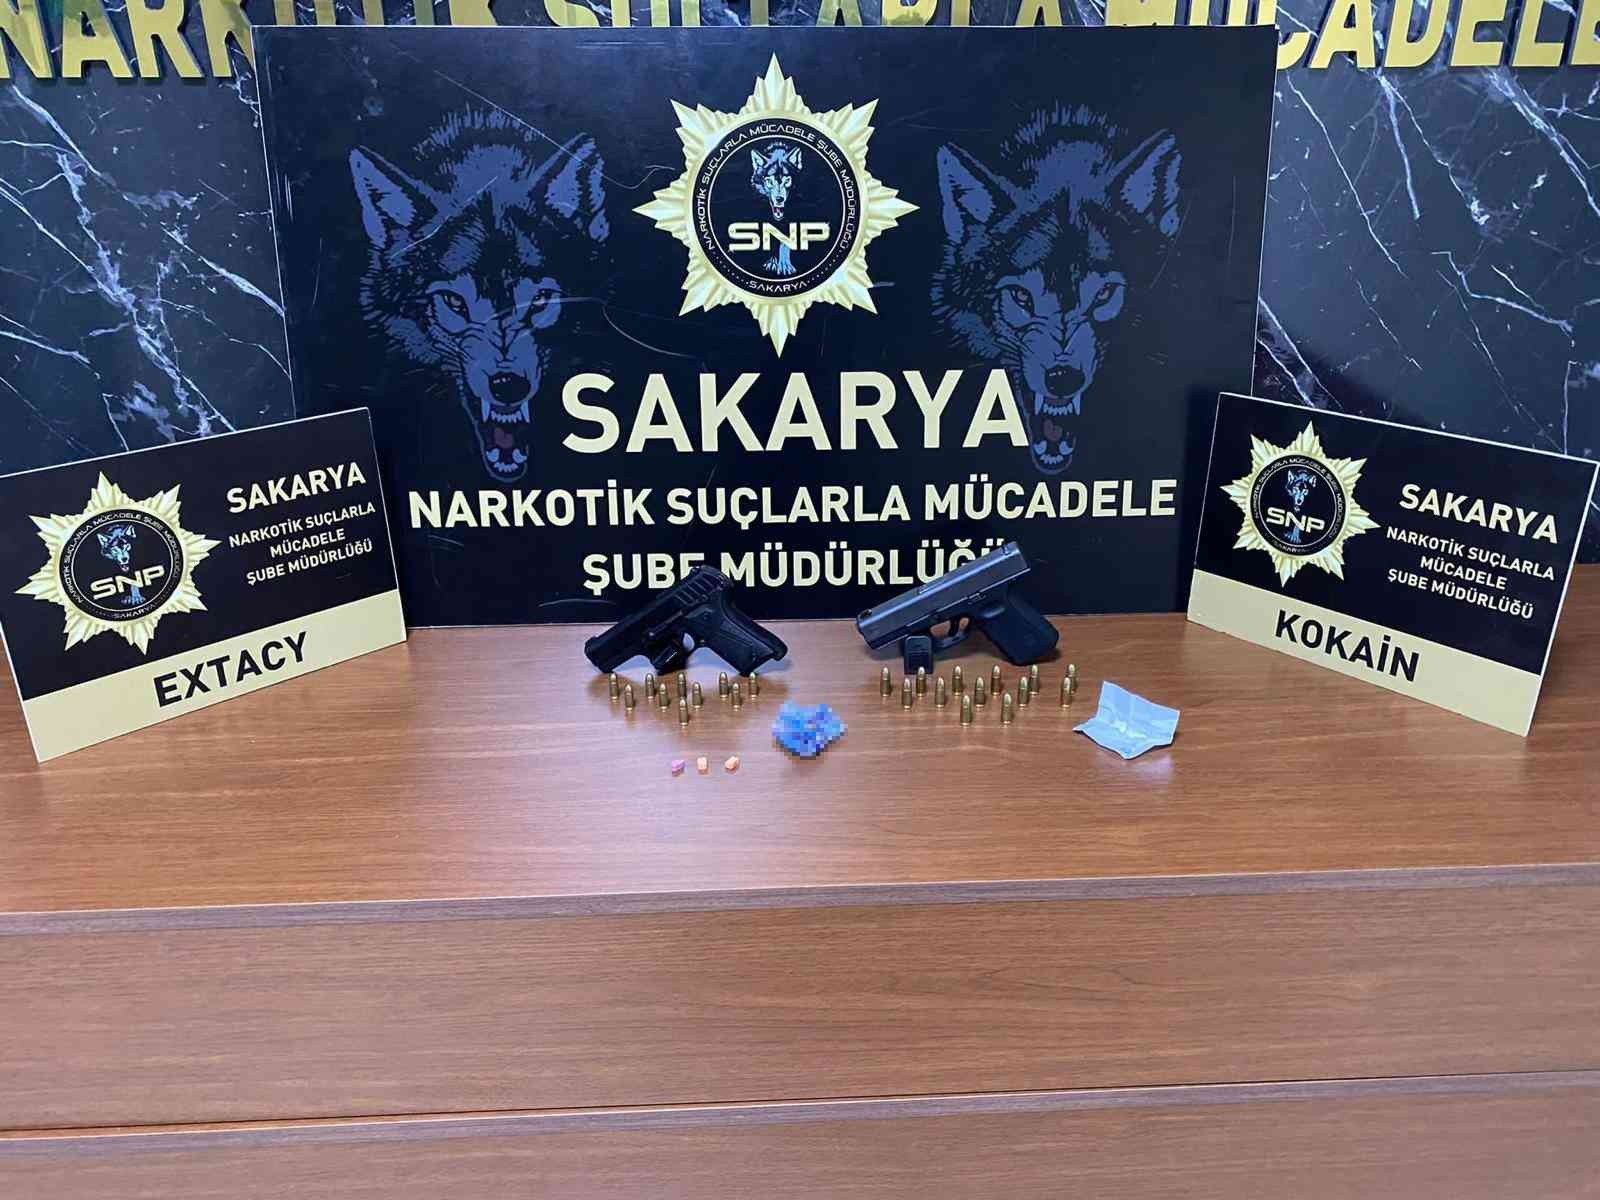 Sakarya’da 2 ilçede 3 adrese uyuşturucu operasyonu: 5 gözaltı